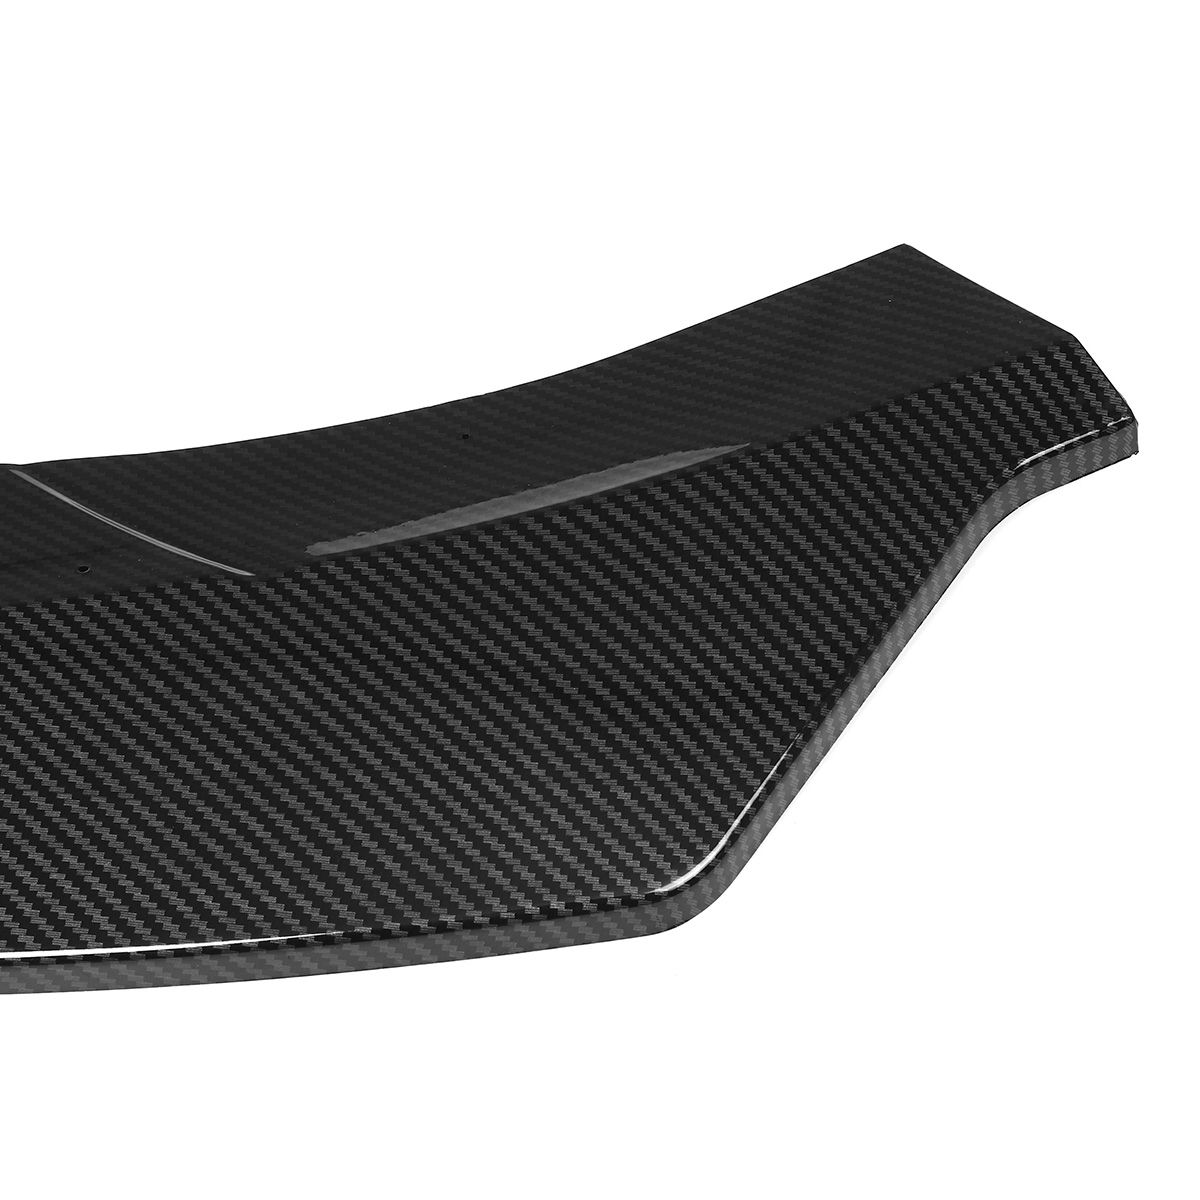 3Pcs-Carbon-Fiber-Front-Bumper-Protector-Lip-Spoiler-Covers-Trim-For-Mercedes-Benz-CLA-Class-W117-20-1629231